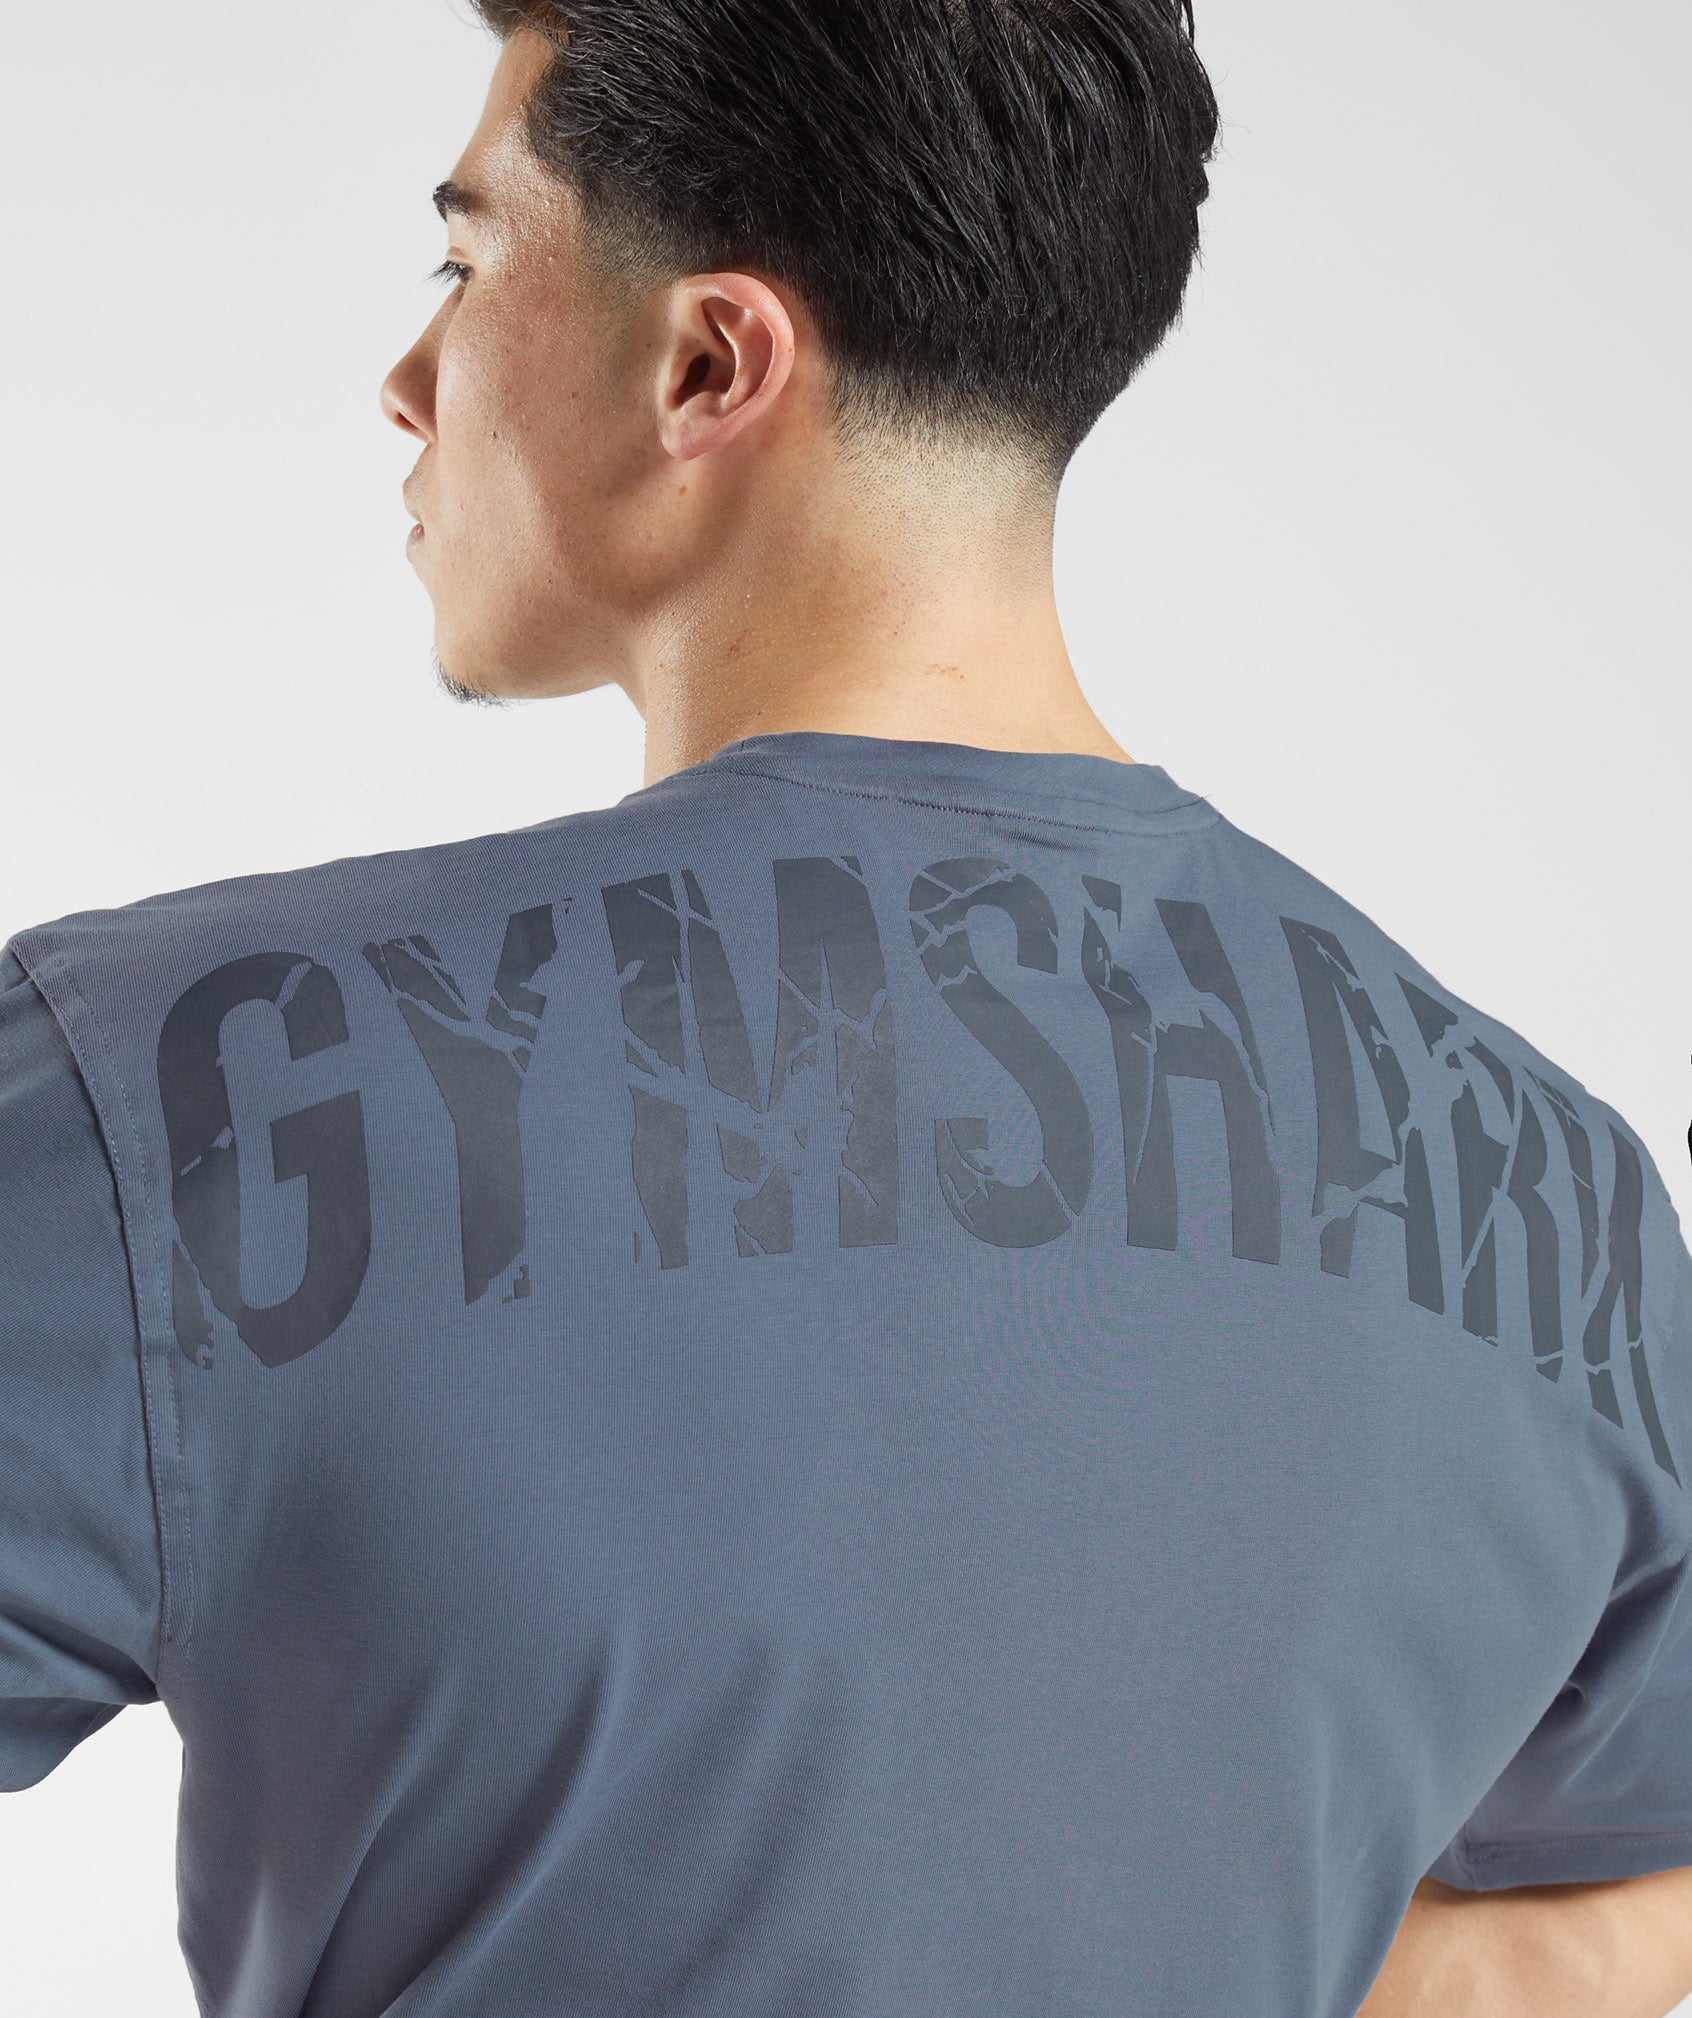 Gymshark Power T-Shirt - Desert Beige